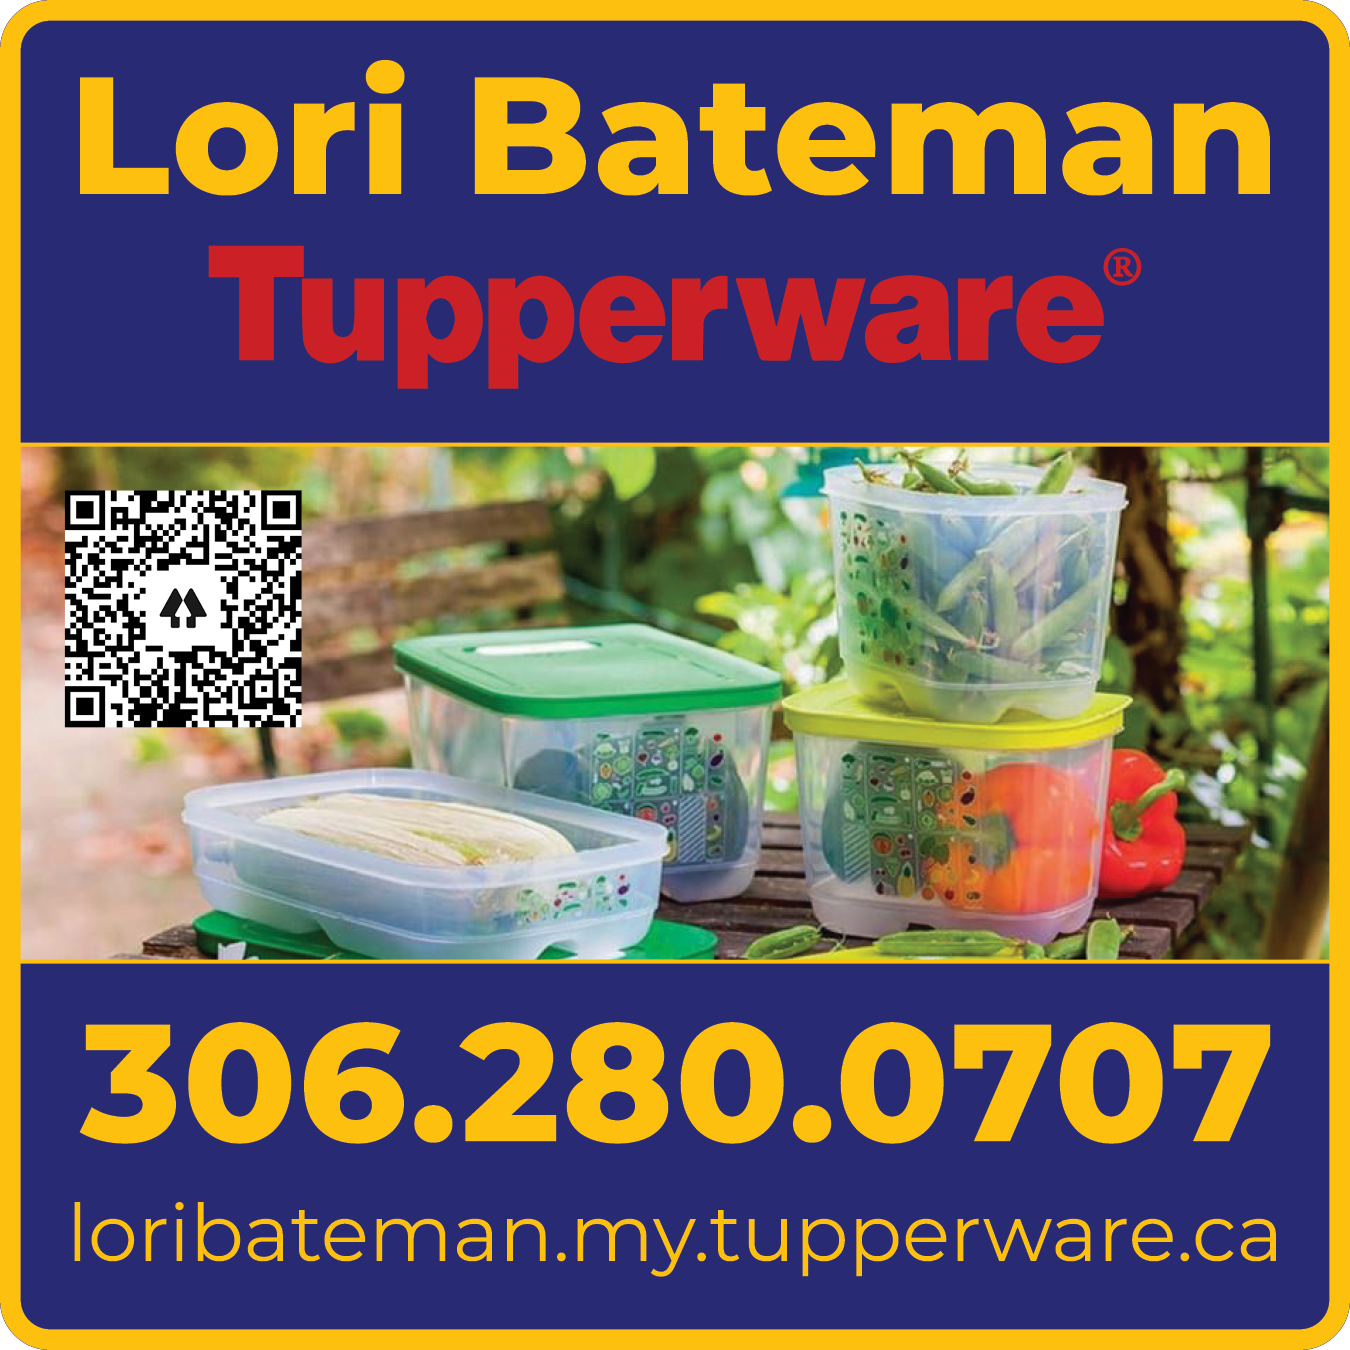 Lori Bateman Tupperware